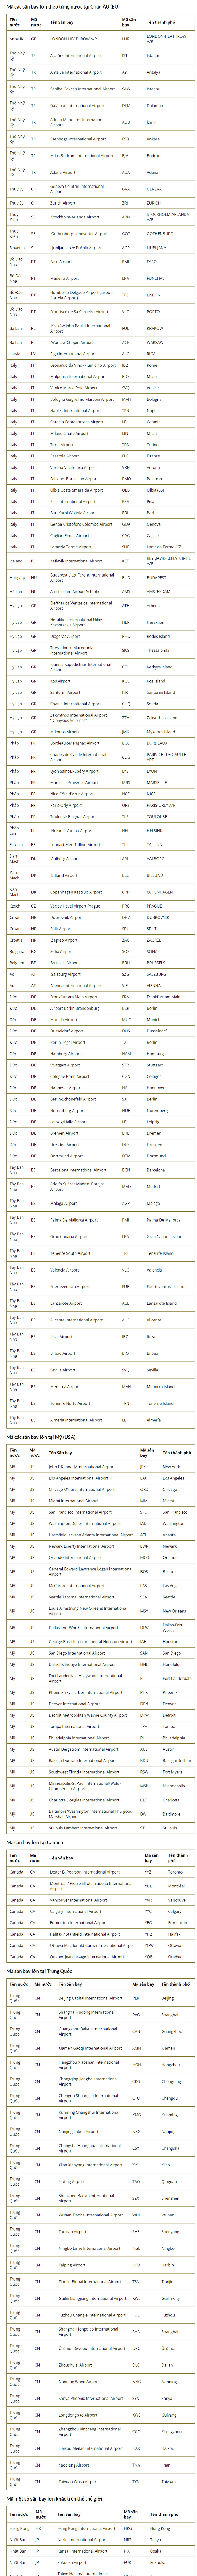 Danh sách các mã sân bay quốc tế lớn trên thế giới